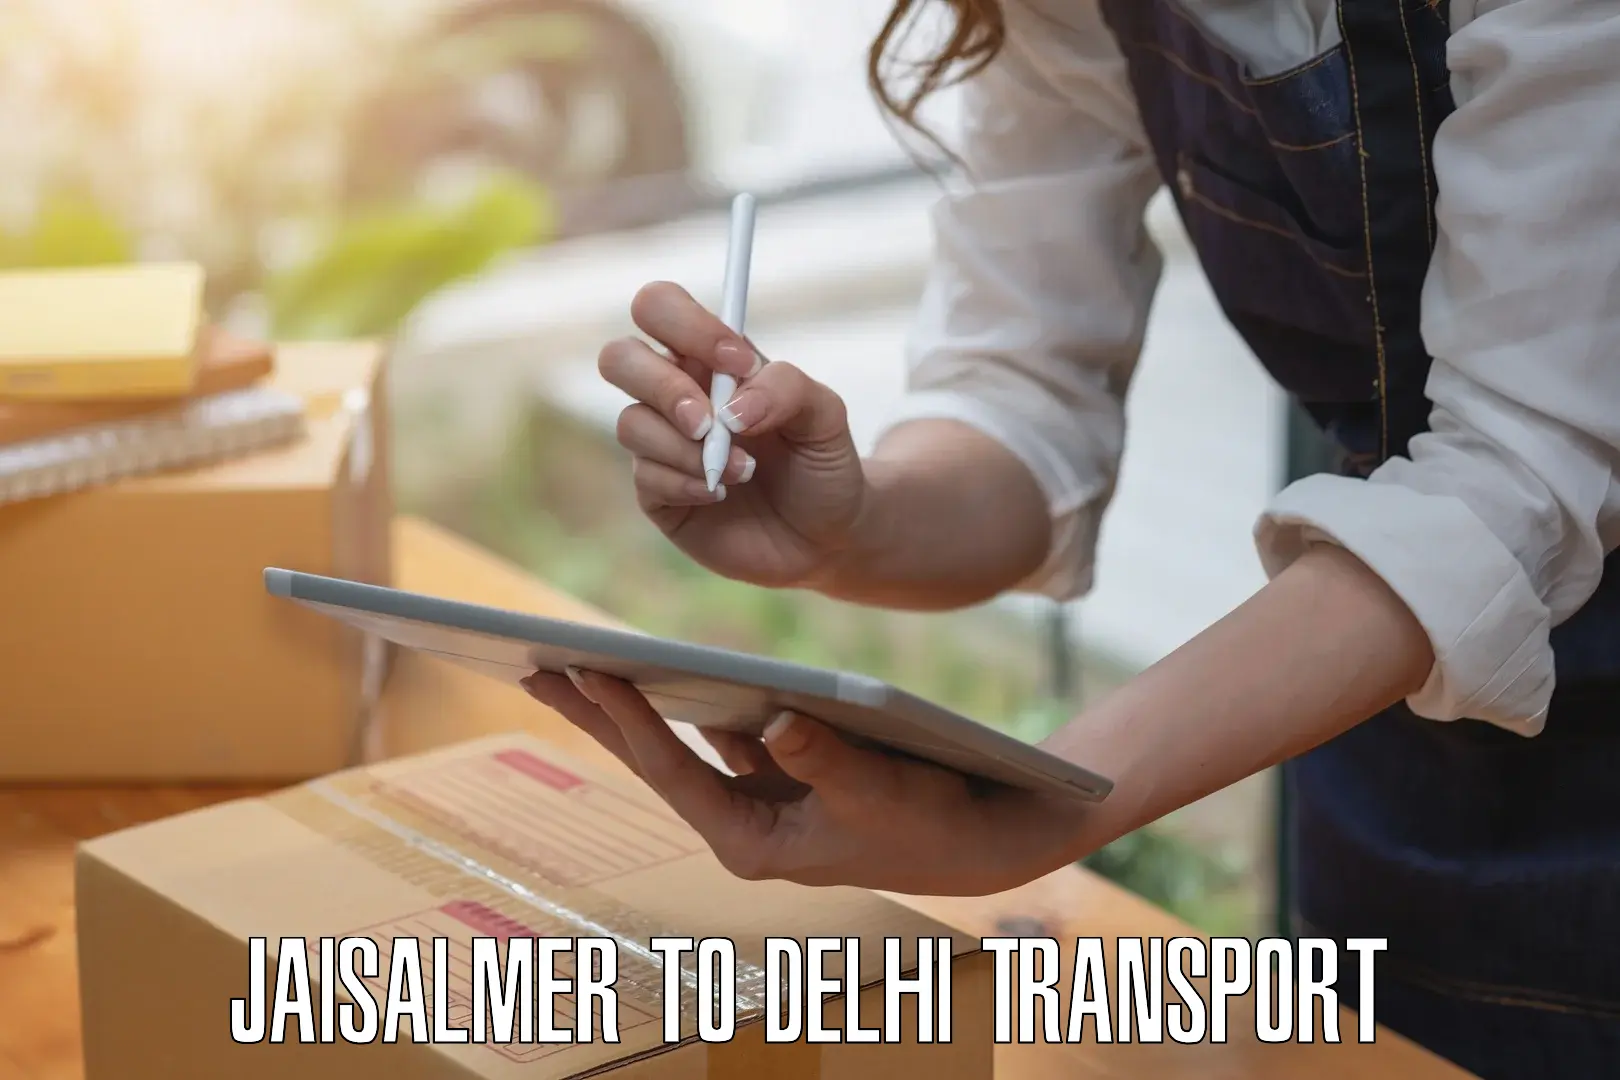 Furniture transport service in Jaisalmer to Delhi